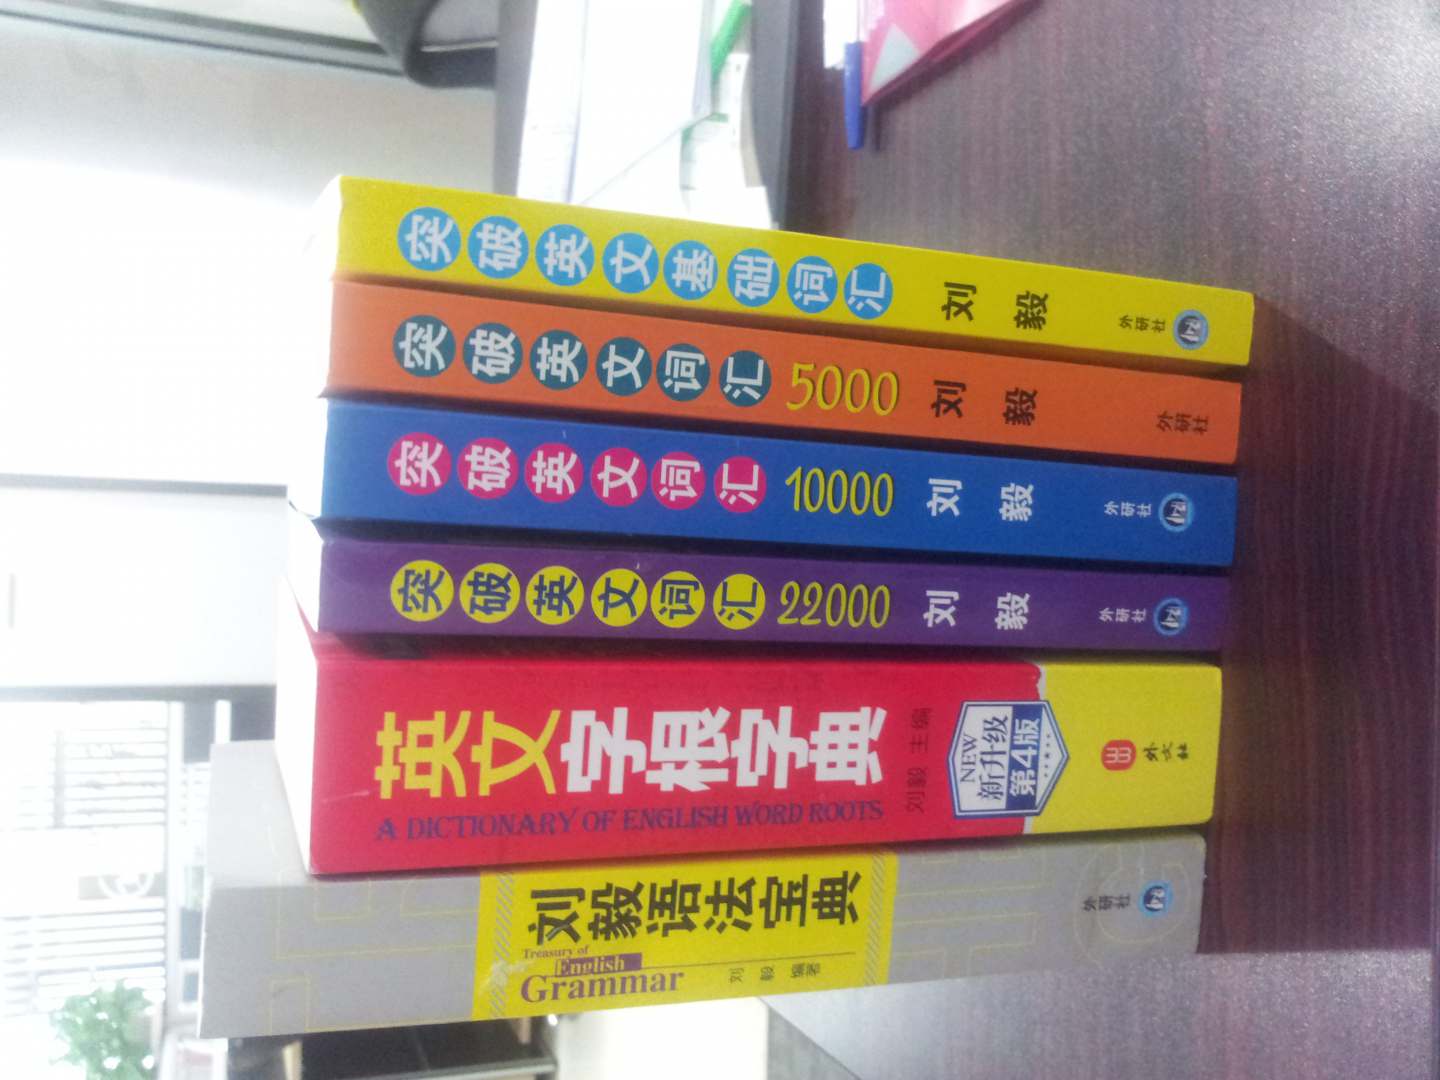 学习英语的好书！书不错，上大学是就在看刘毅的英语读物，原来的书借出去，已经找不到了，现在重新买回《突破英语》（4本）+《字根》+《语法》，这次好好保留！